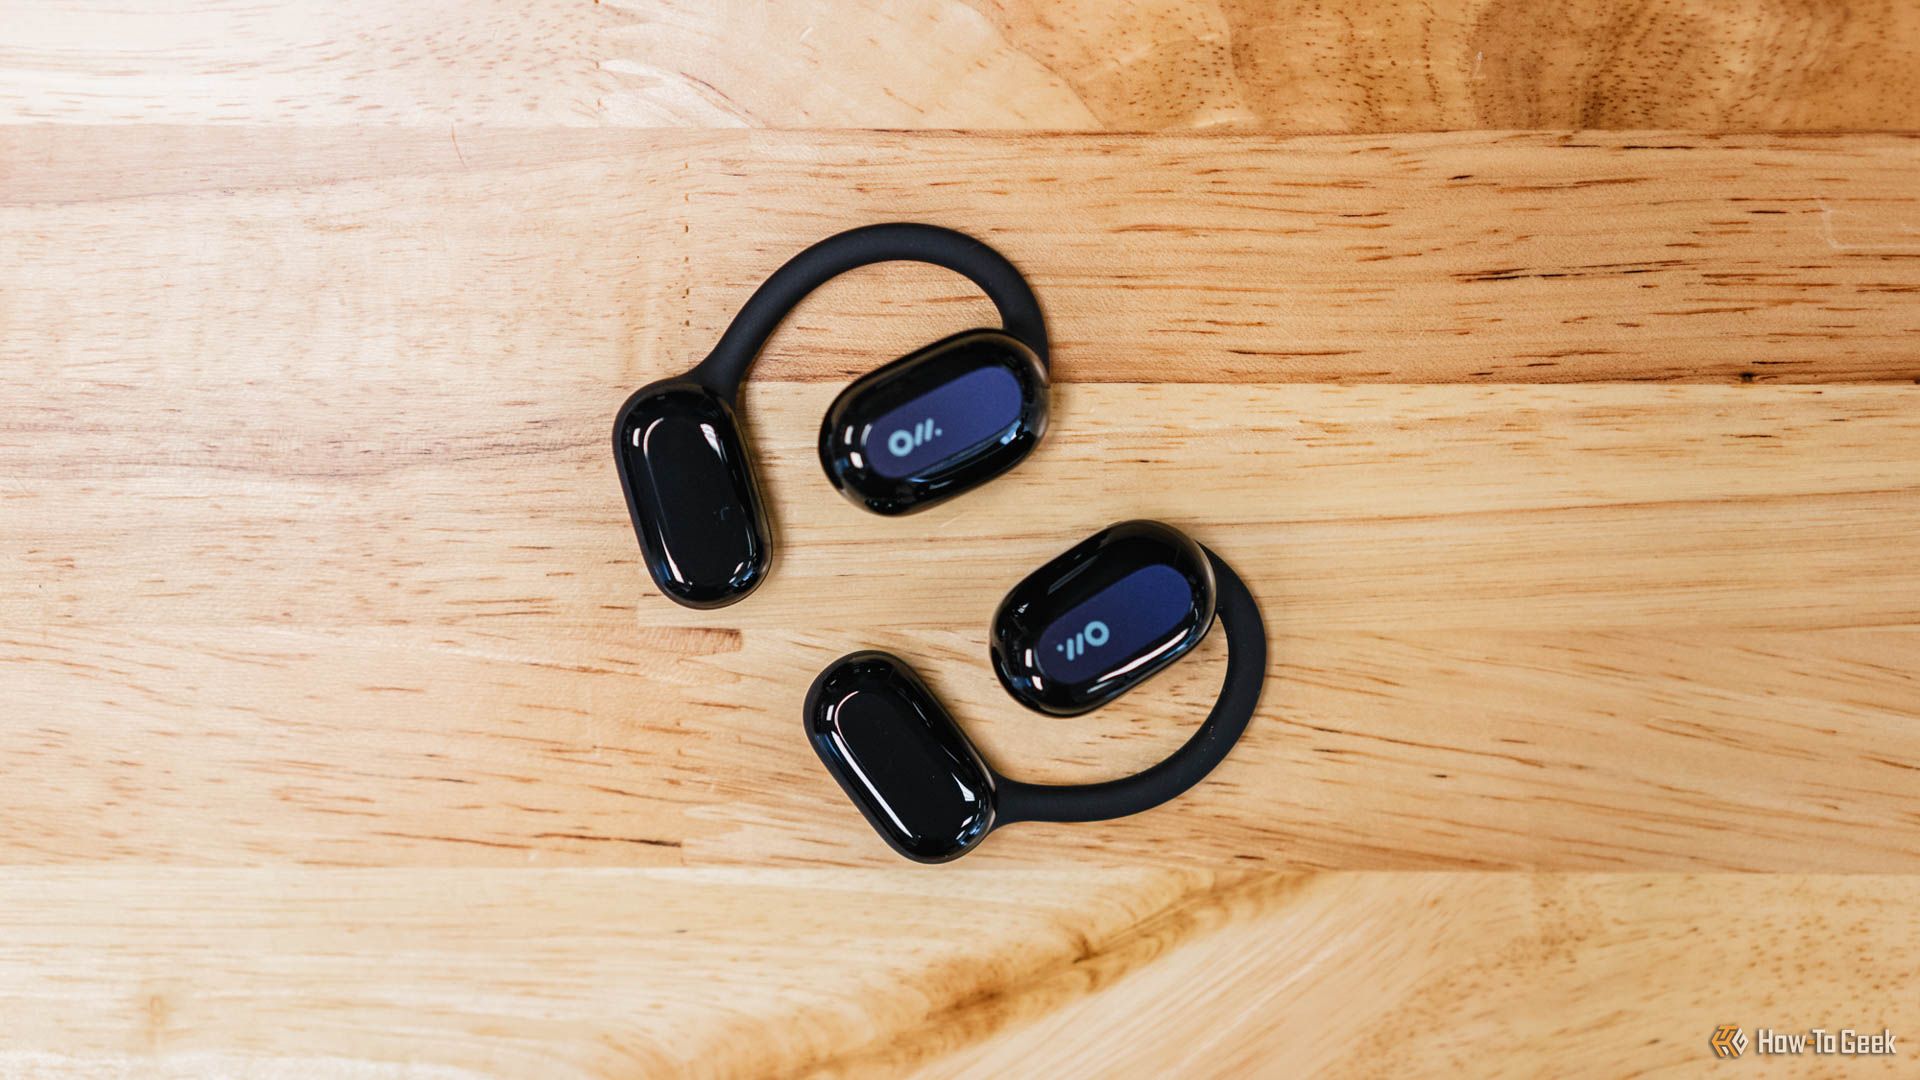 The Oladance Open-Ear Headphones on a wooden table.